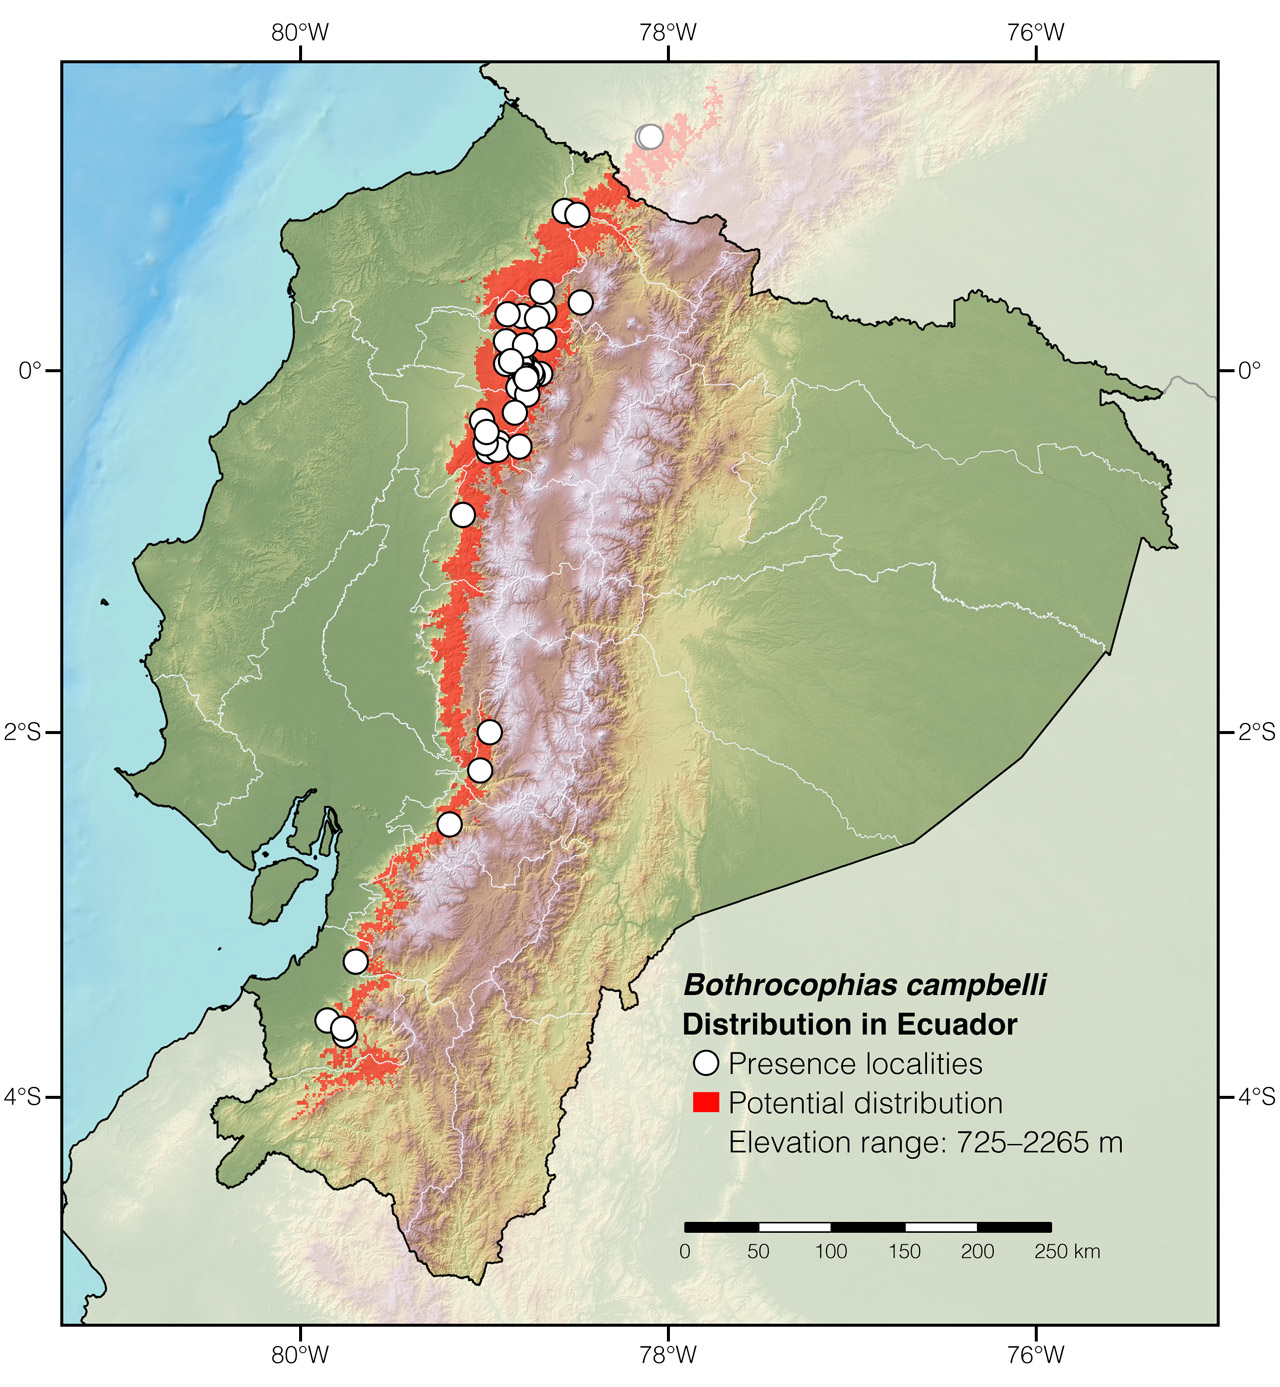 Distribution of Bothrocophias campbelli in Ecuador